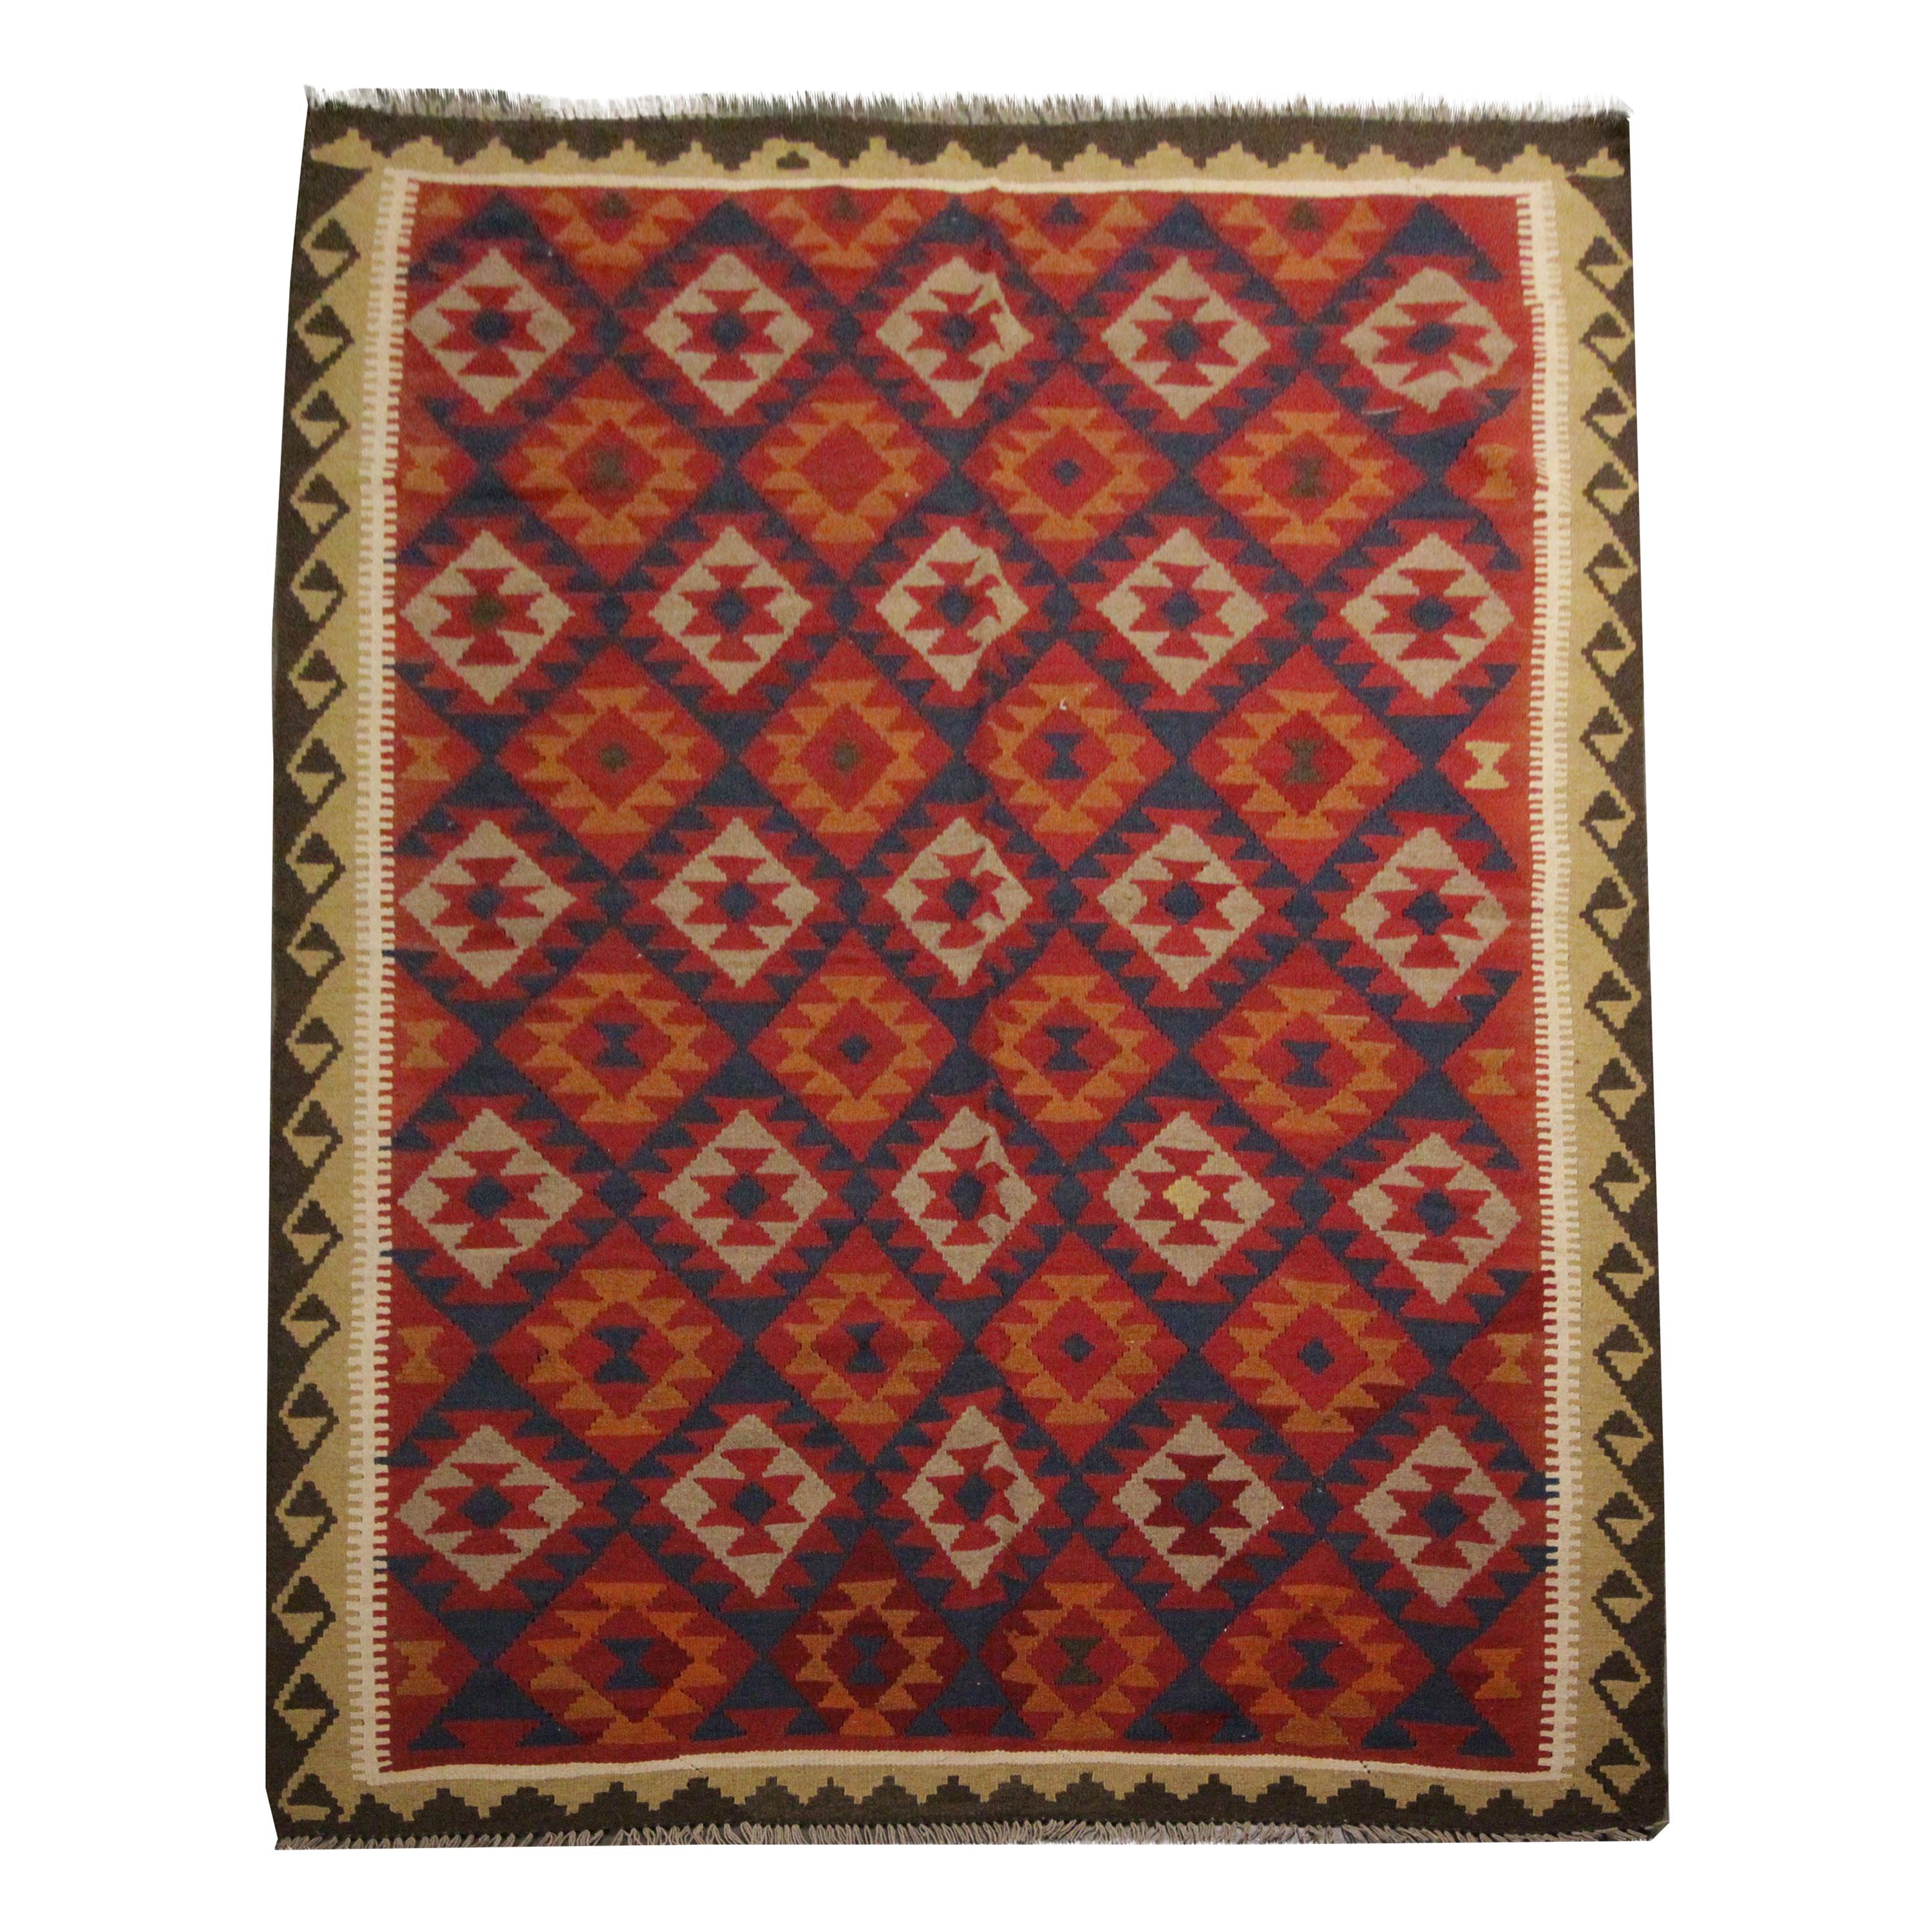 Traditional Handmade Carpet Wool Kilim Rug Orange Geometric Area Rug